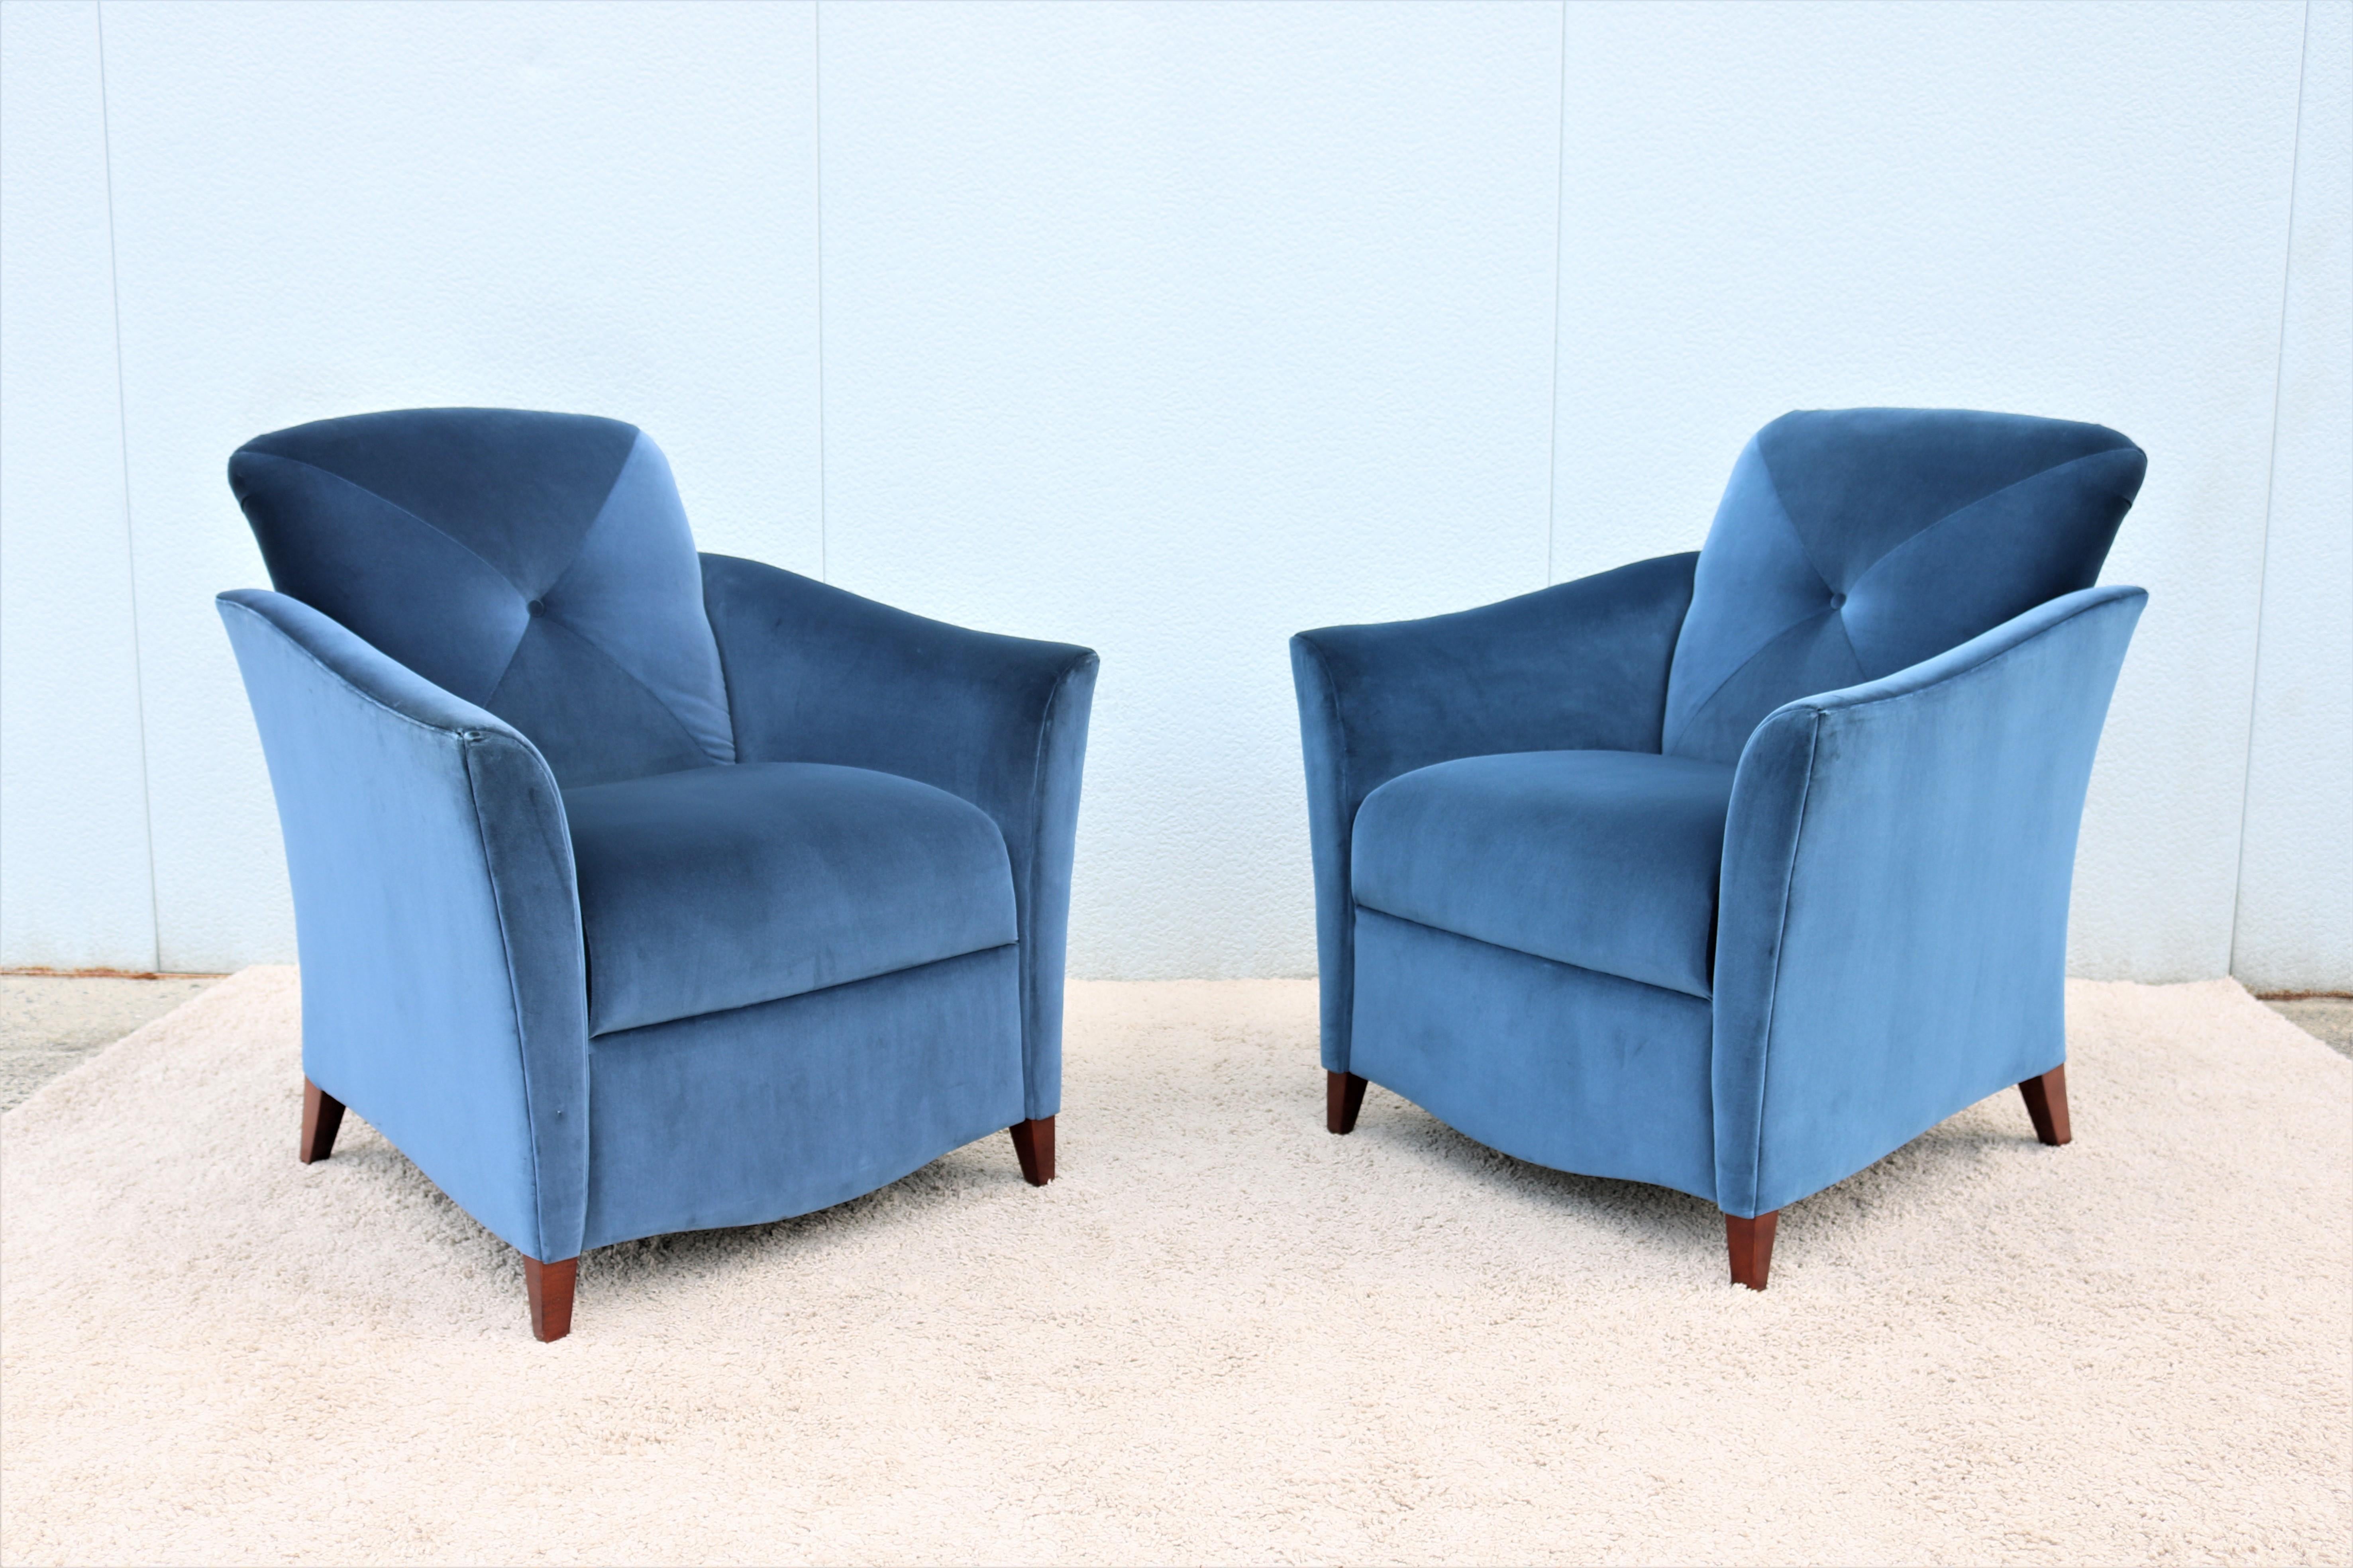 Diese fabelhaften Portrait Lounge Chairs im Art Deco Stil werden von Jofco in Handarbeit aus den besten Materialien und in bester Handwerkskunst hergestellt.
Das perfekt geschwungene Design und die sanft zurückgelehnte Rückenlehne sorgen für